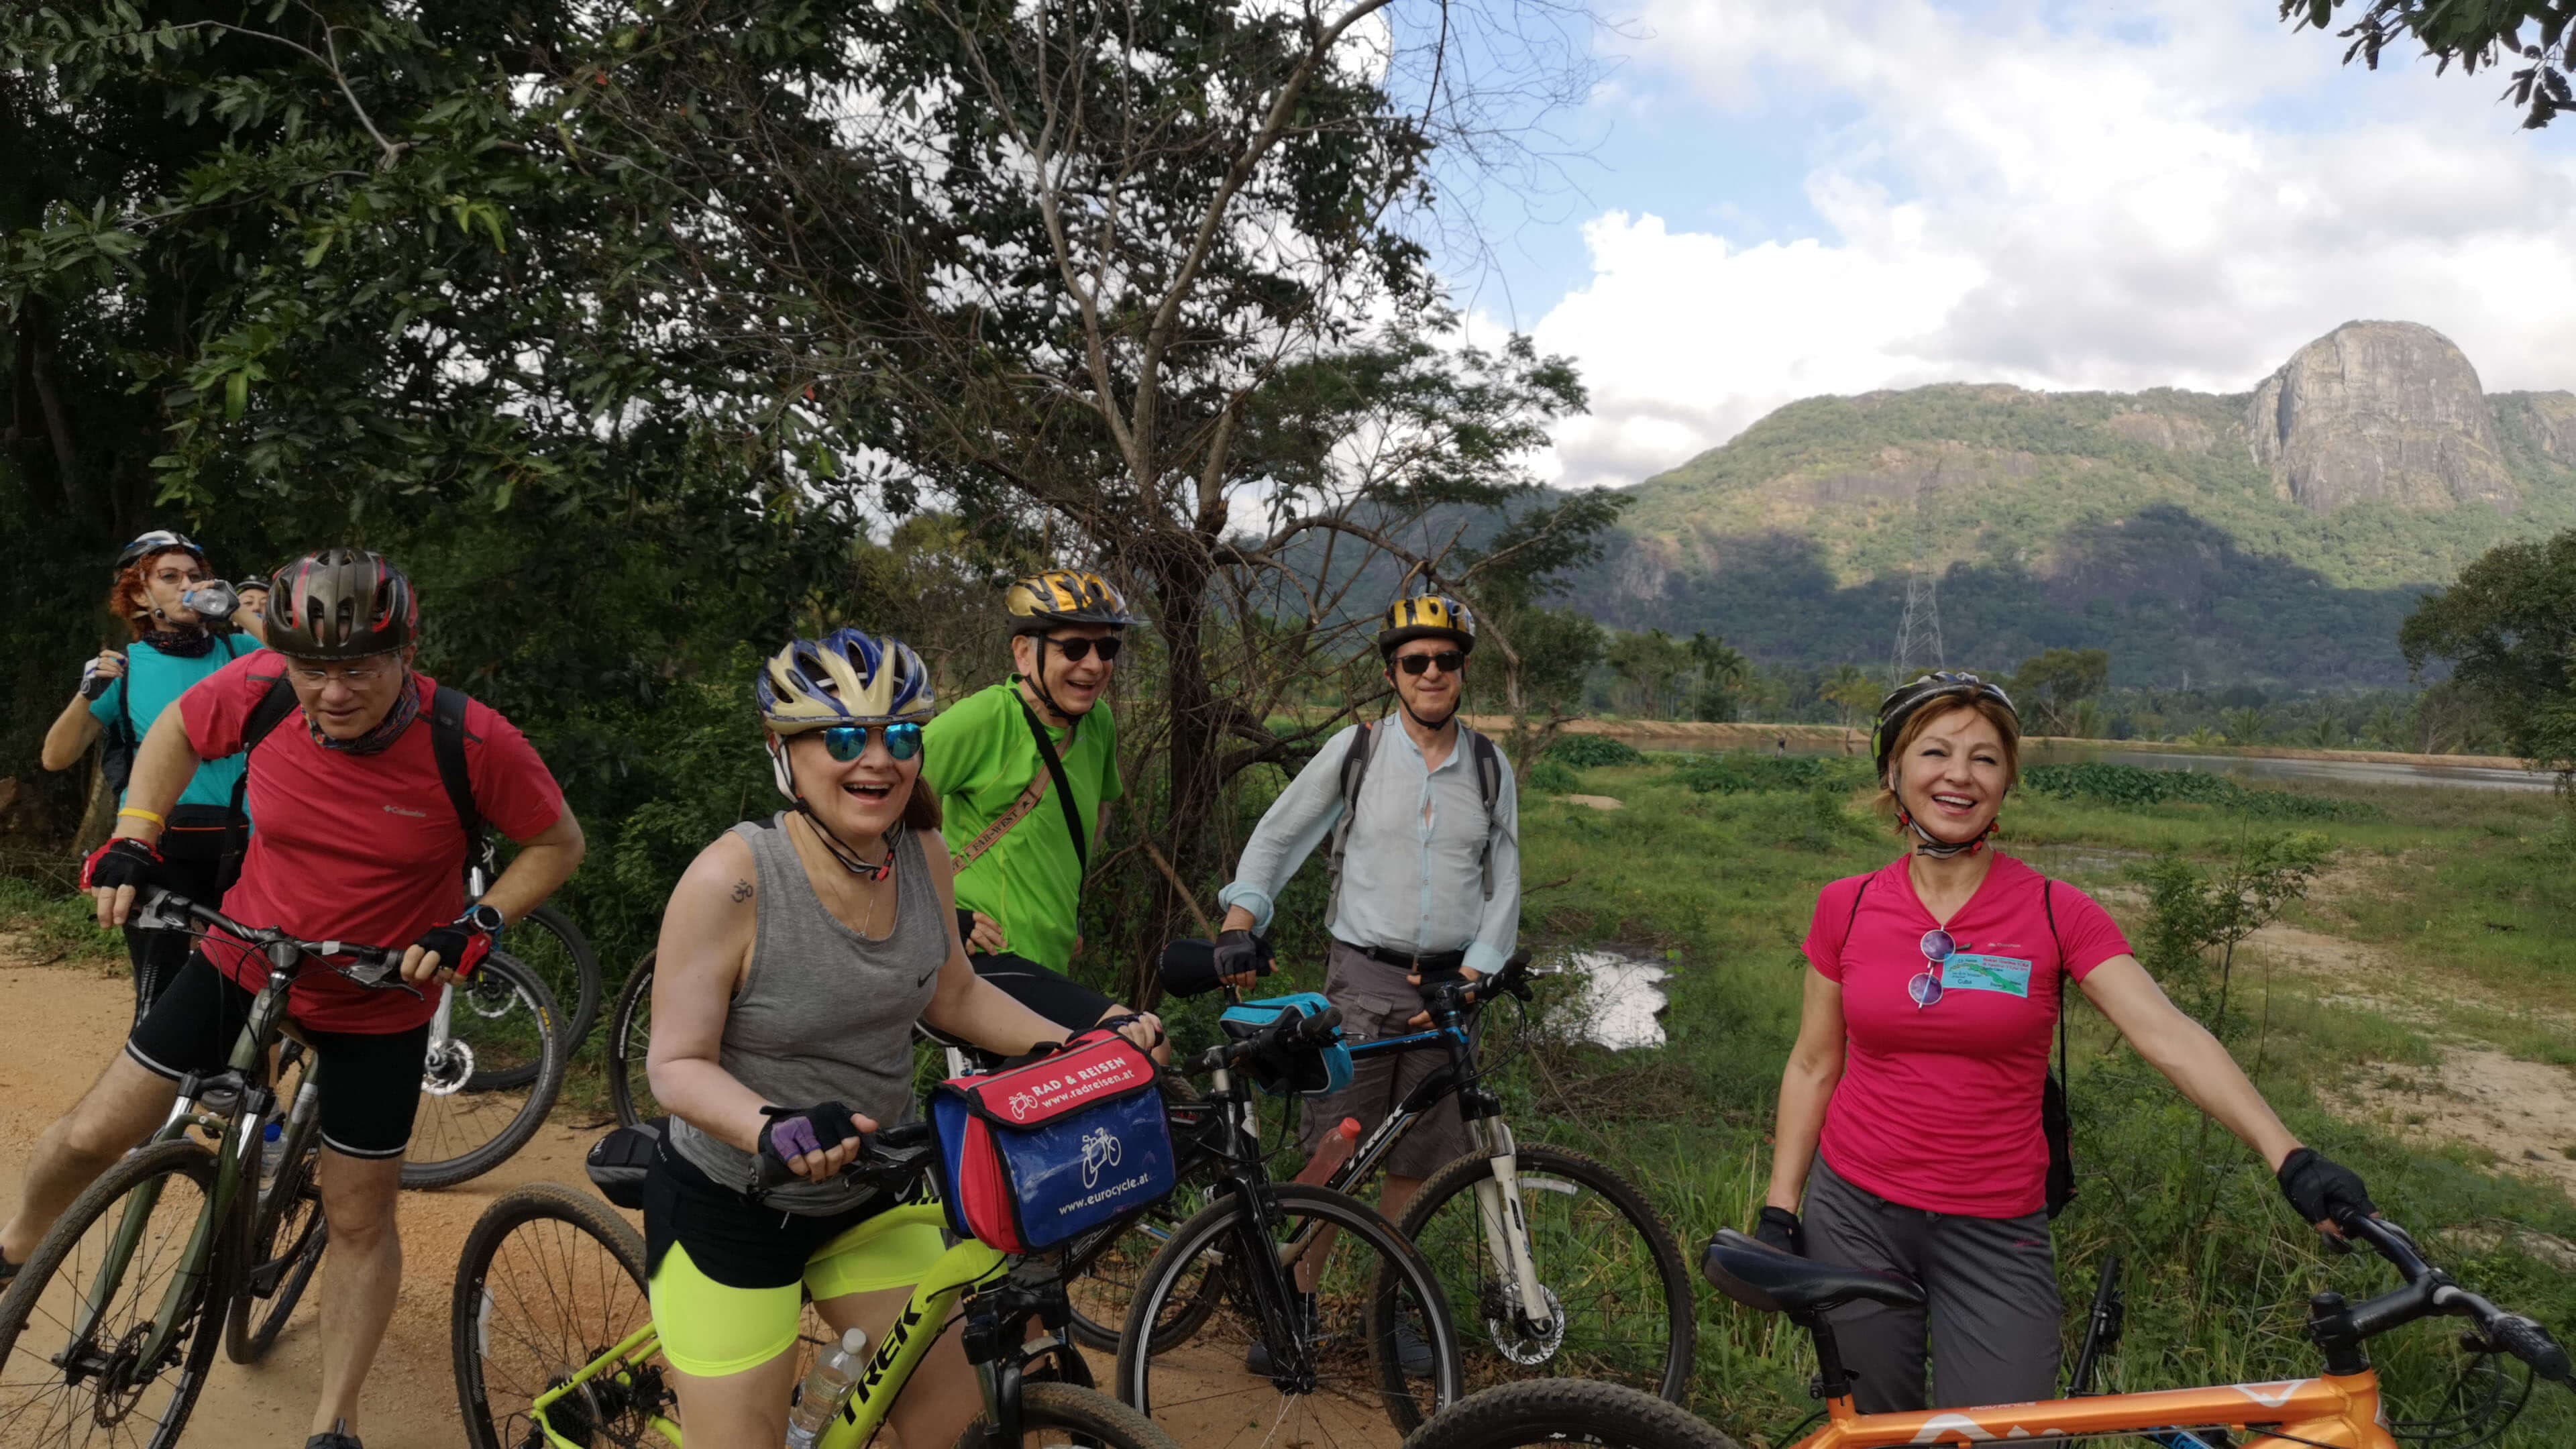 Группа счастливых велосипедистов отдыхает во время велосипедного тура по Удавалаве, изучающего красоту природы.